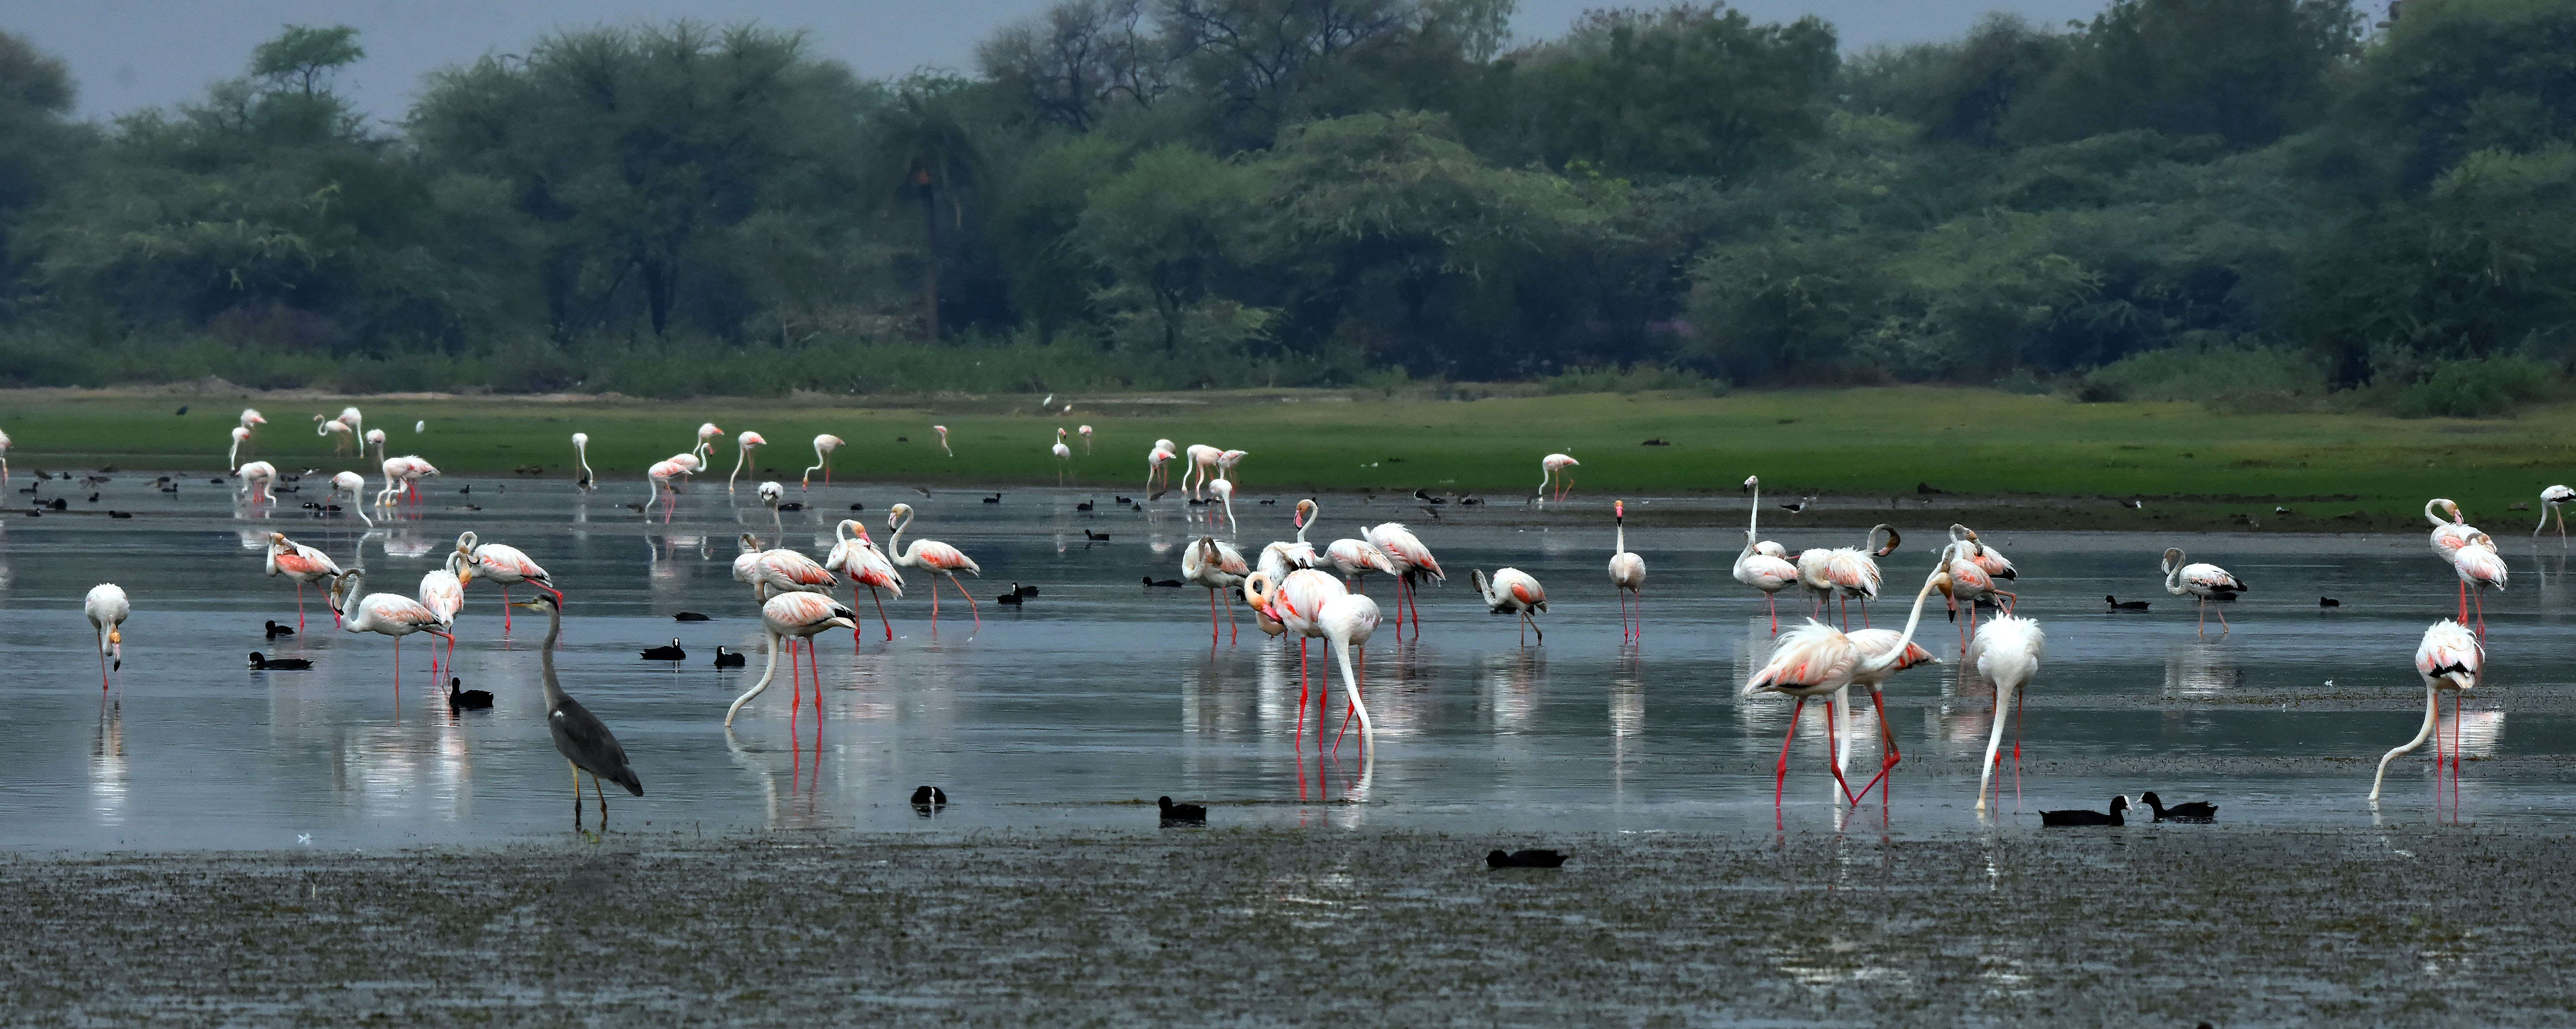 मेनार तालाब पर बड़ी संख्या में मौजूद विभिन्न प्रजातियों के पक्षी।